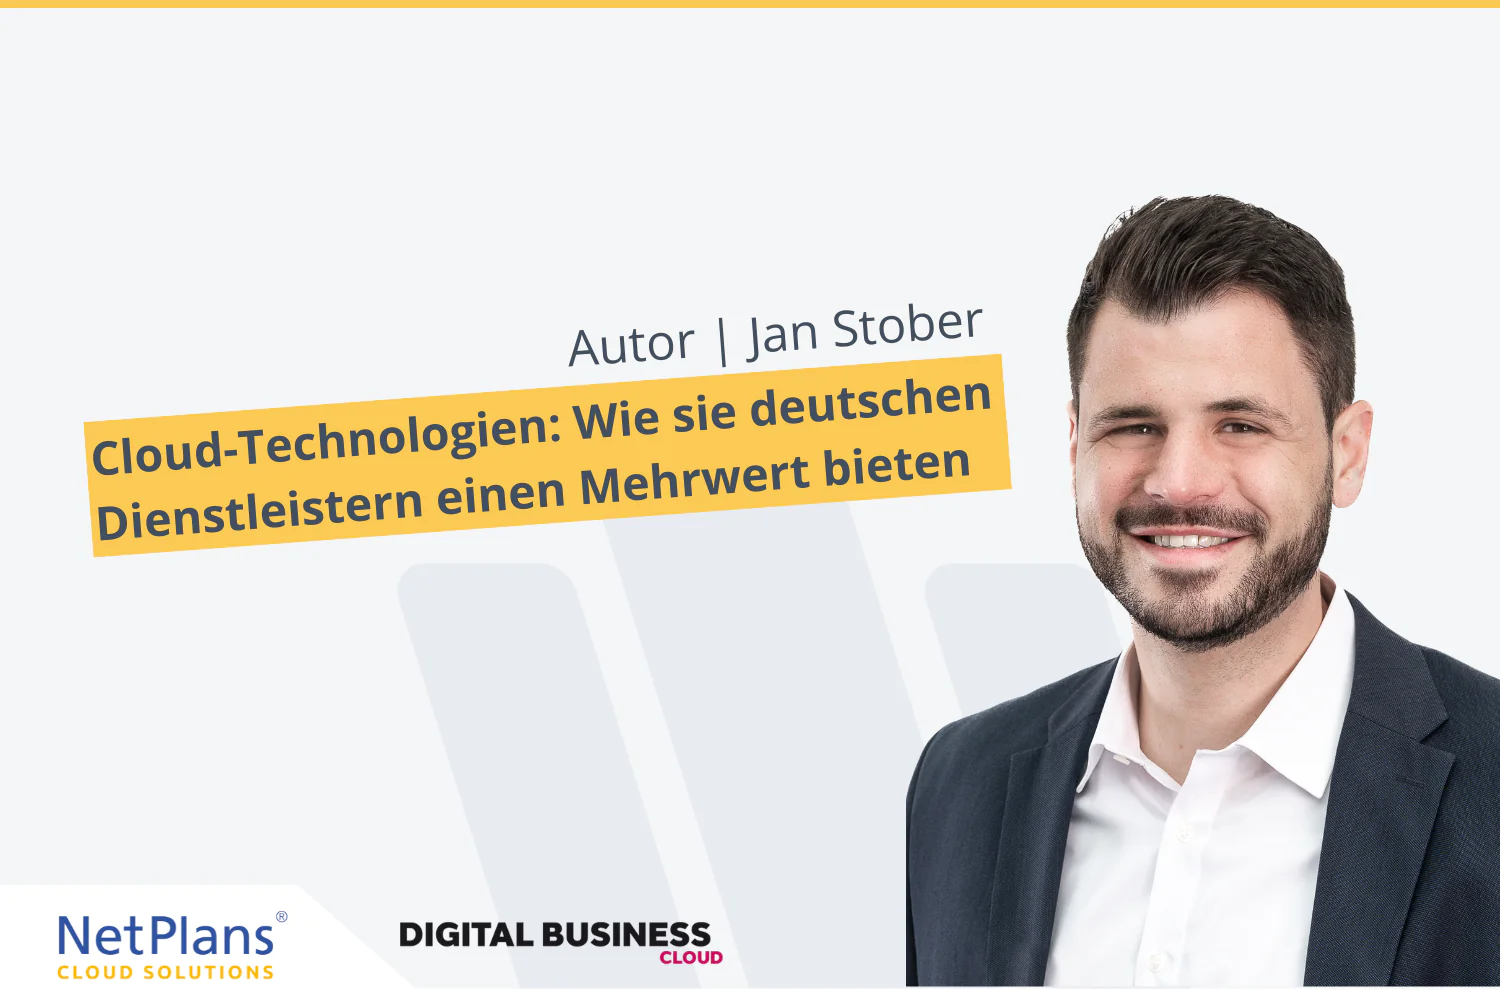 Mann lächelnd im Vordergrund mit NetPlans und Digital Business Cloud Logo und Text Cloud Technologie: Wie sie deutschen Dienstleistern einen Mehrwert bieten